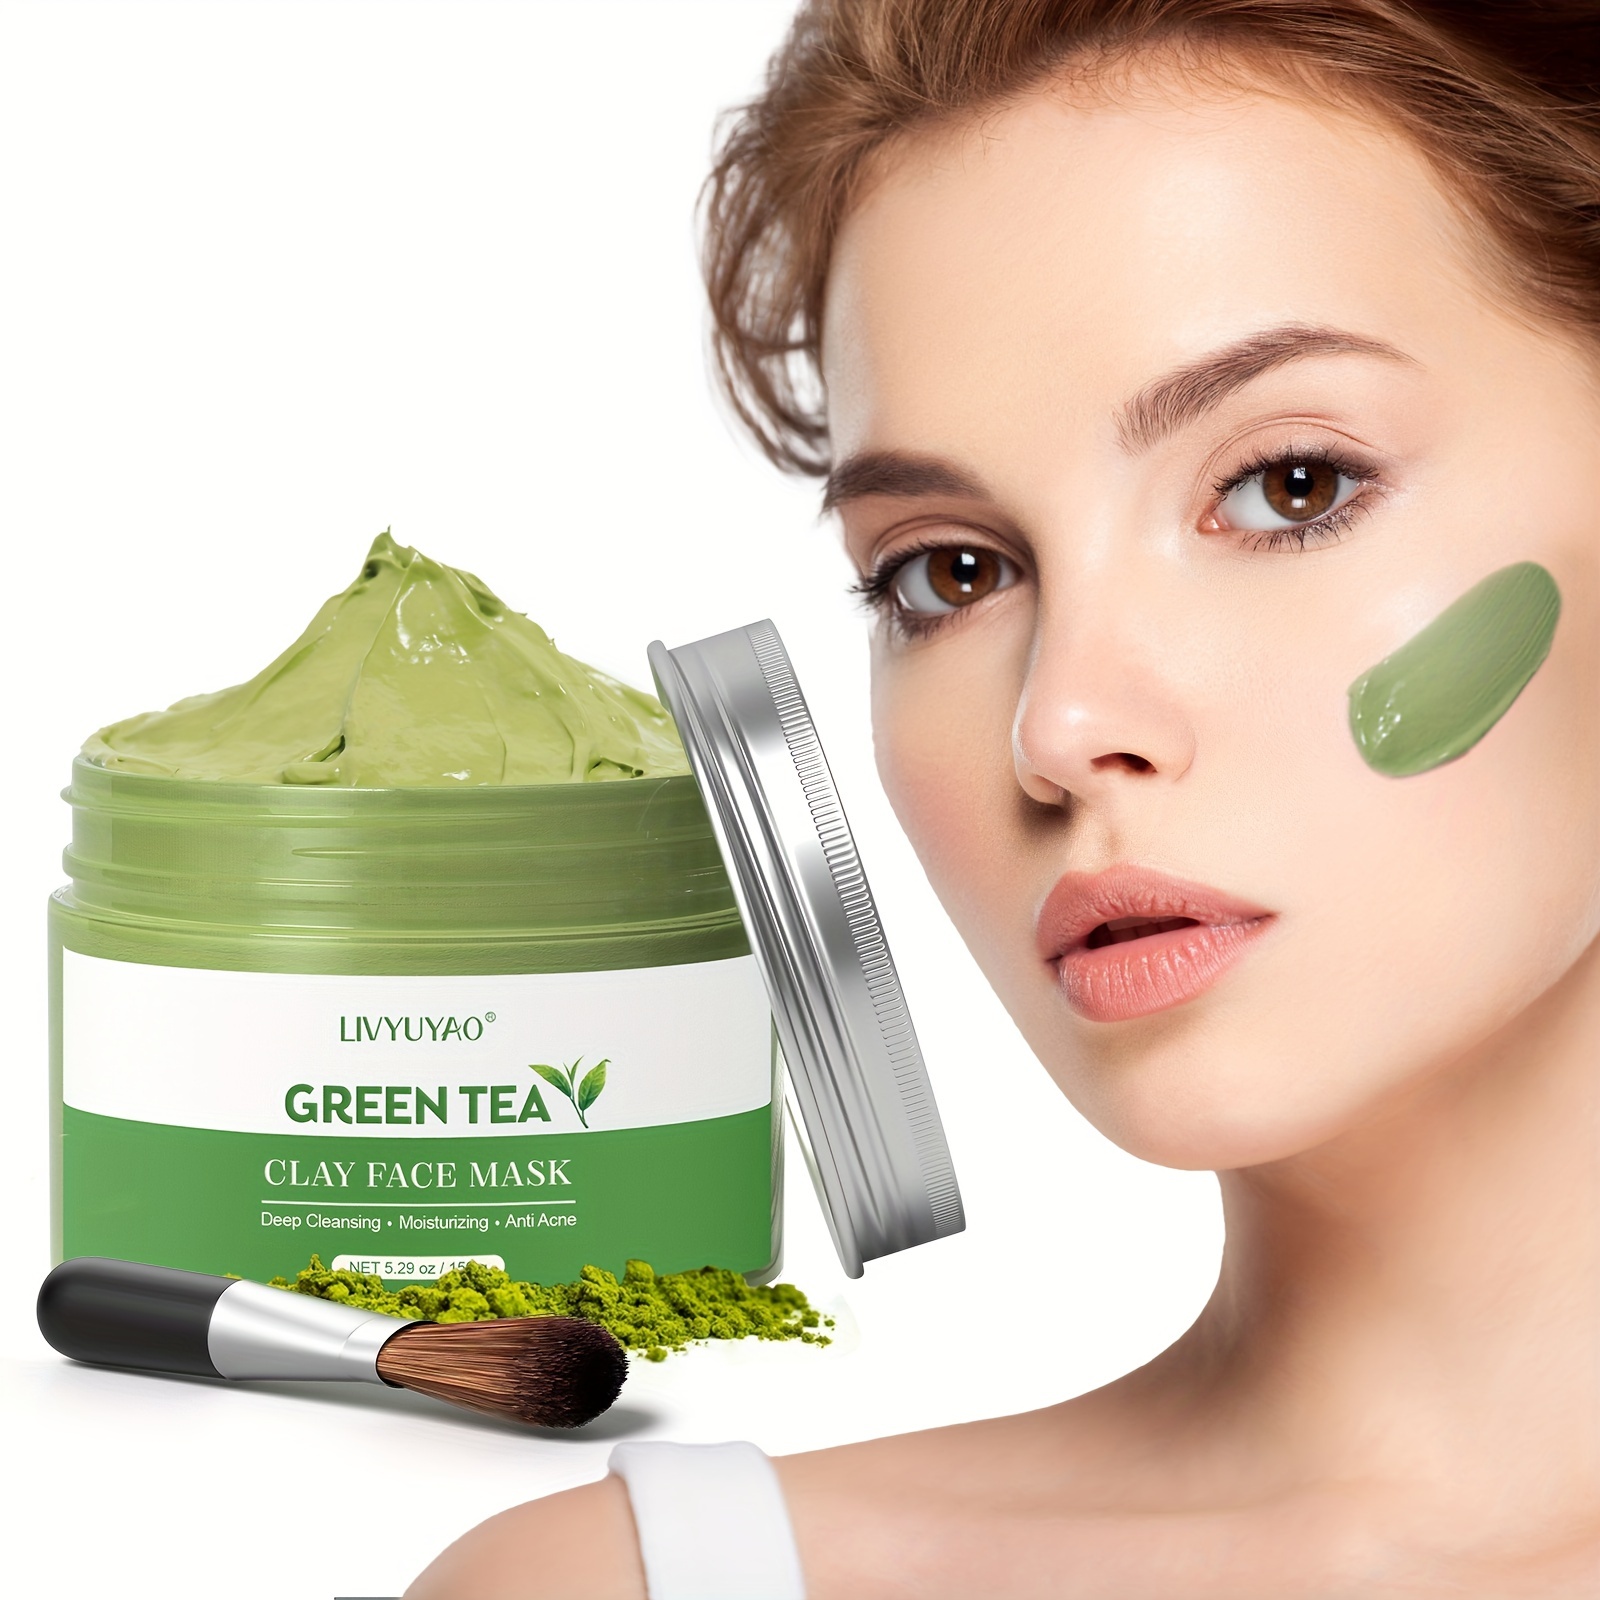 Green Clay for Facial Mask/Arcilla Verde Natural para Mascarillas o Masajes  1Klo